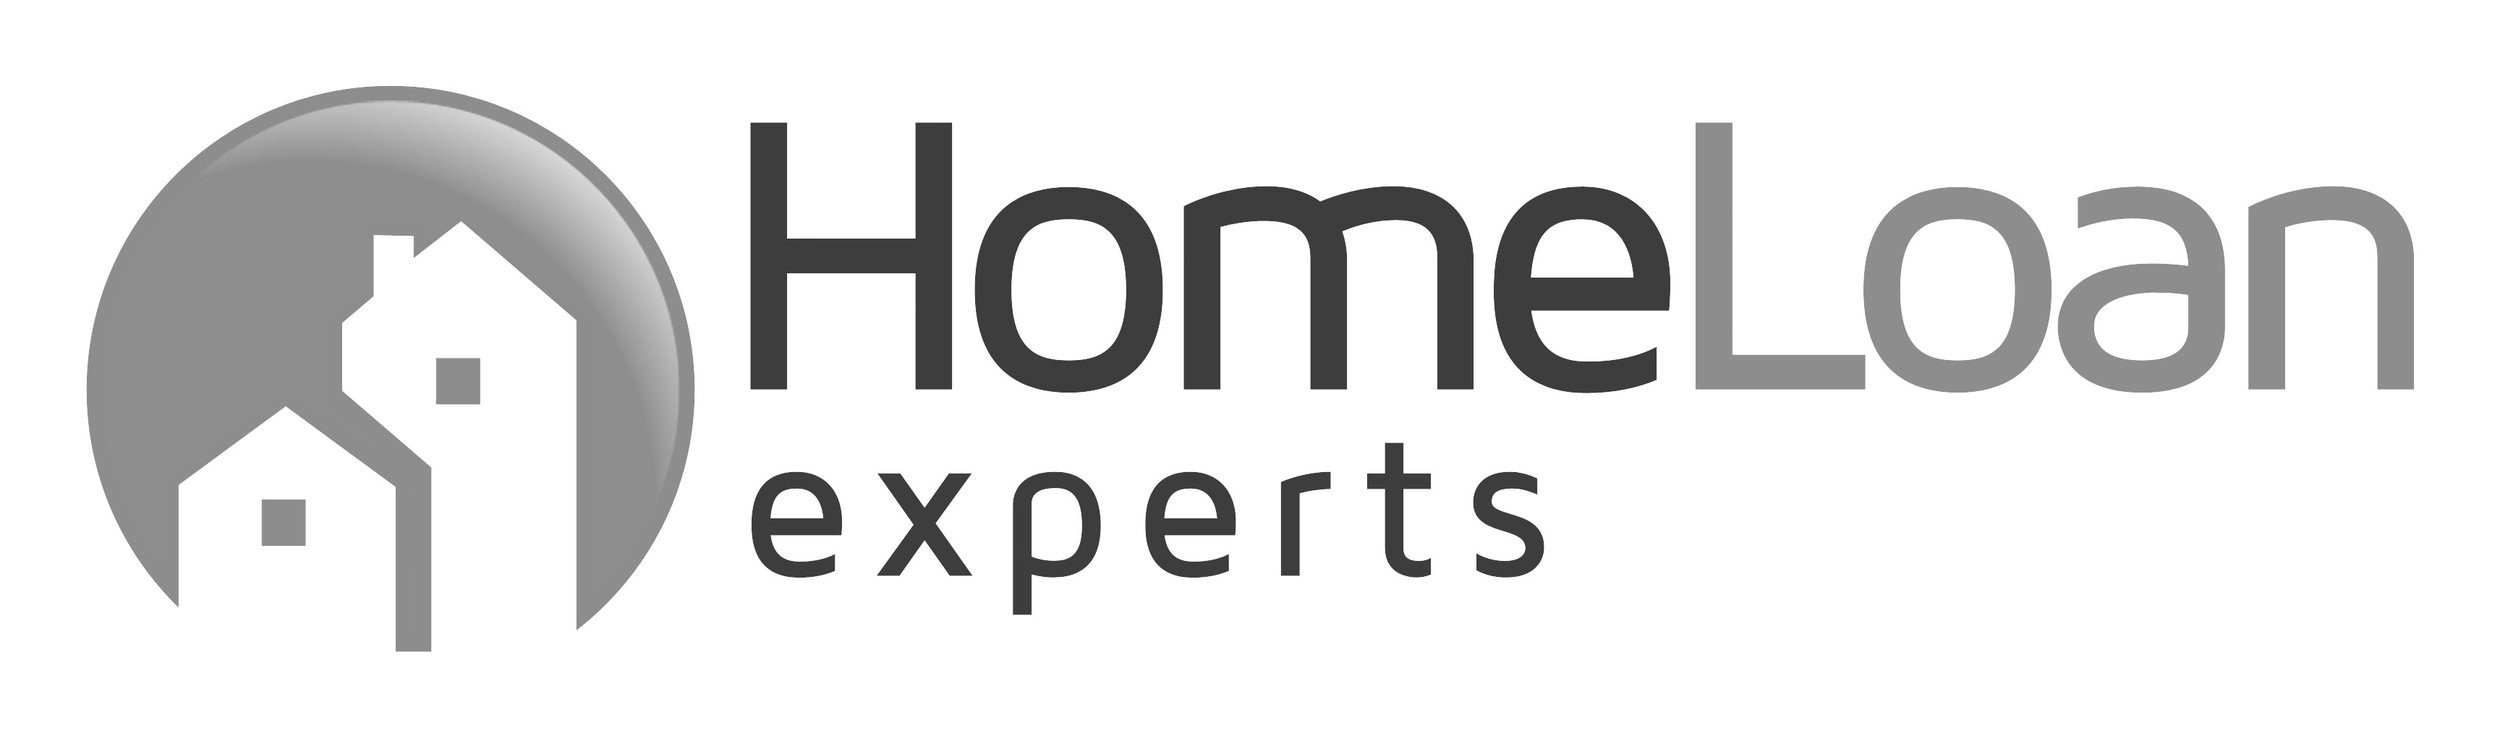 Home-Loan-Experts.jpg